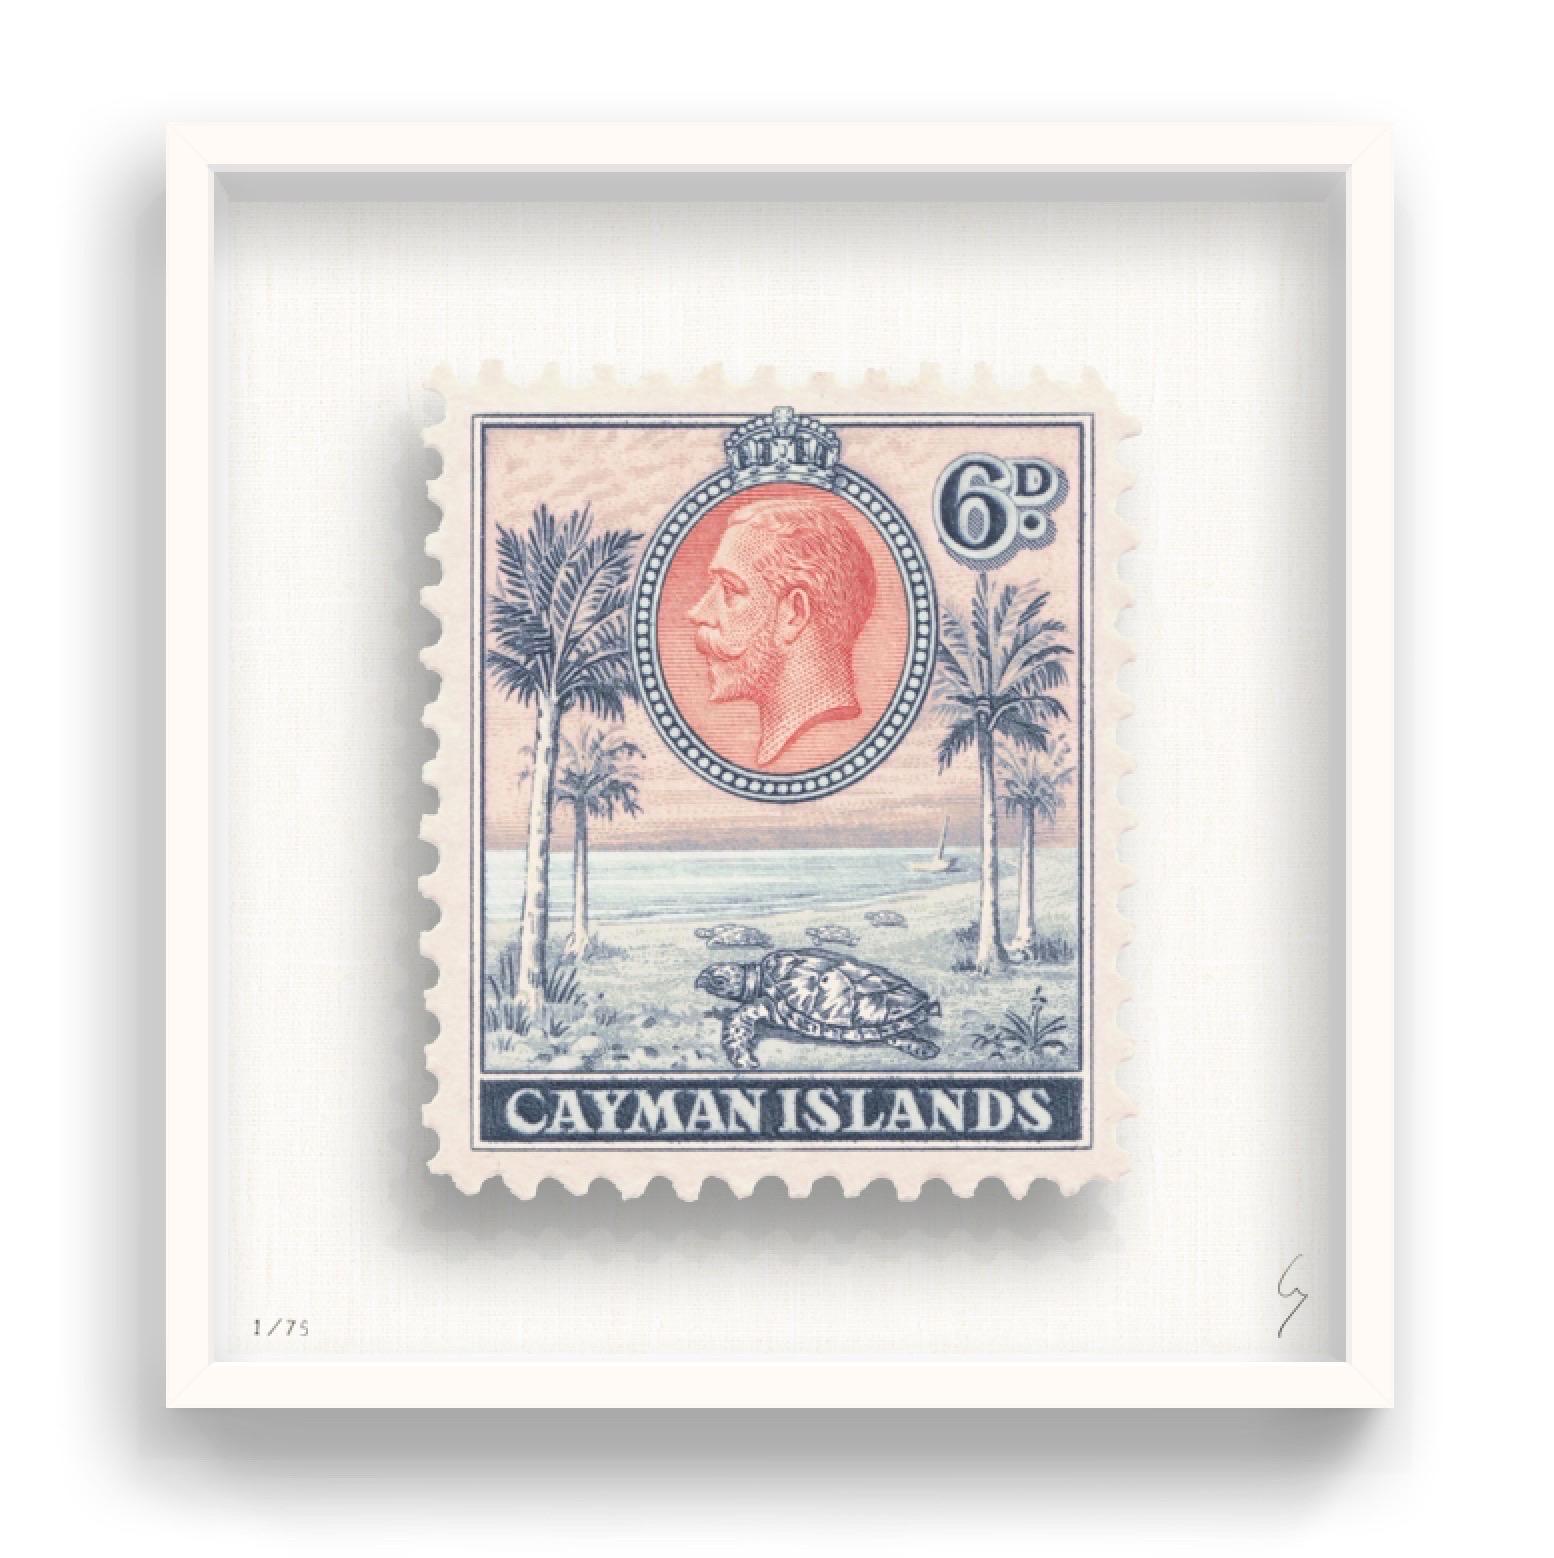 Guy Gee, Cayman-Inseln  (mittel)

Handgravur auf 350gsm auf G.F Smith Karton
53 x 56cm (20 4/5 x 22 2/5 in)
Inklusive Rahmen 
Auflage von 75 

Jedes Kunstwerk von Guy wurde auf der Grundlage einer Originalbriefmarke digital nachgebildet. Das von